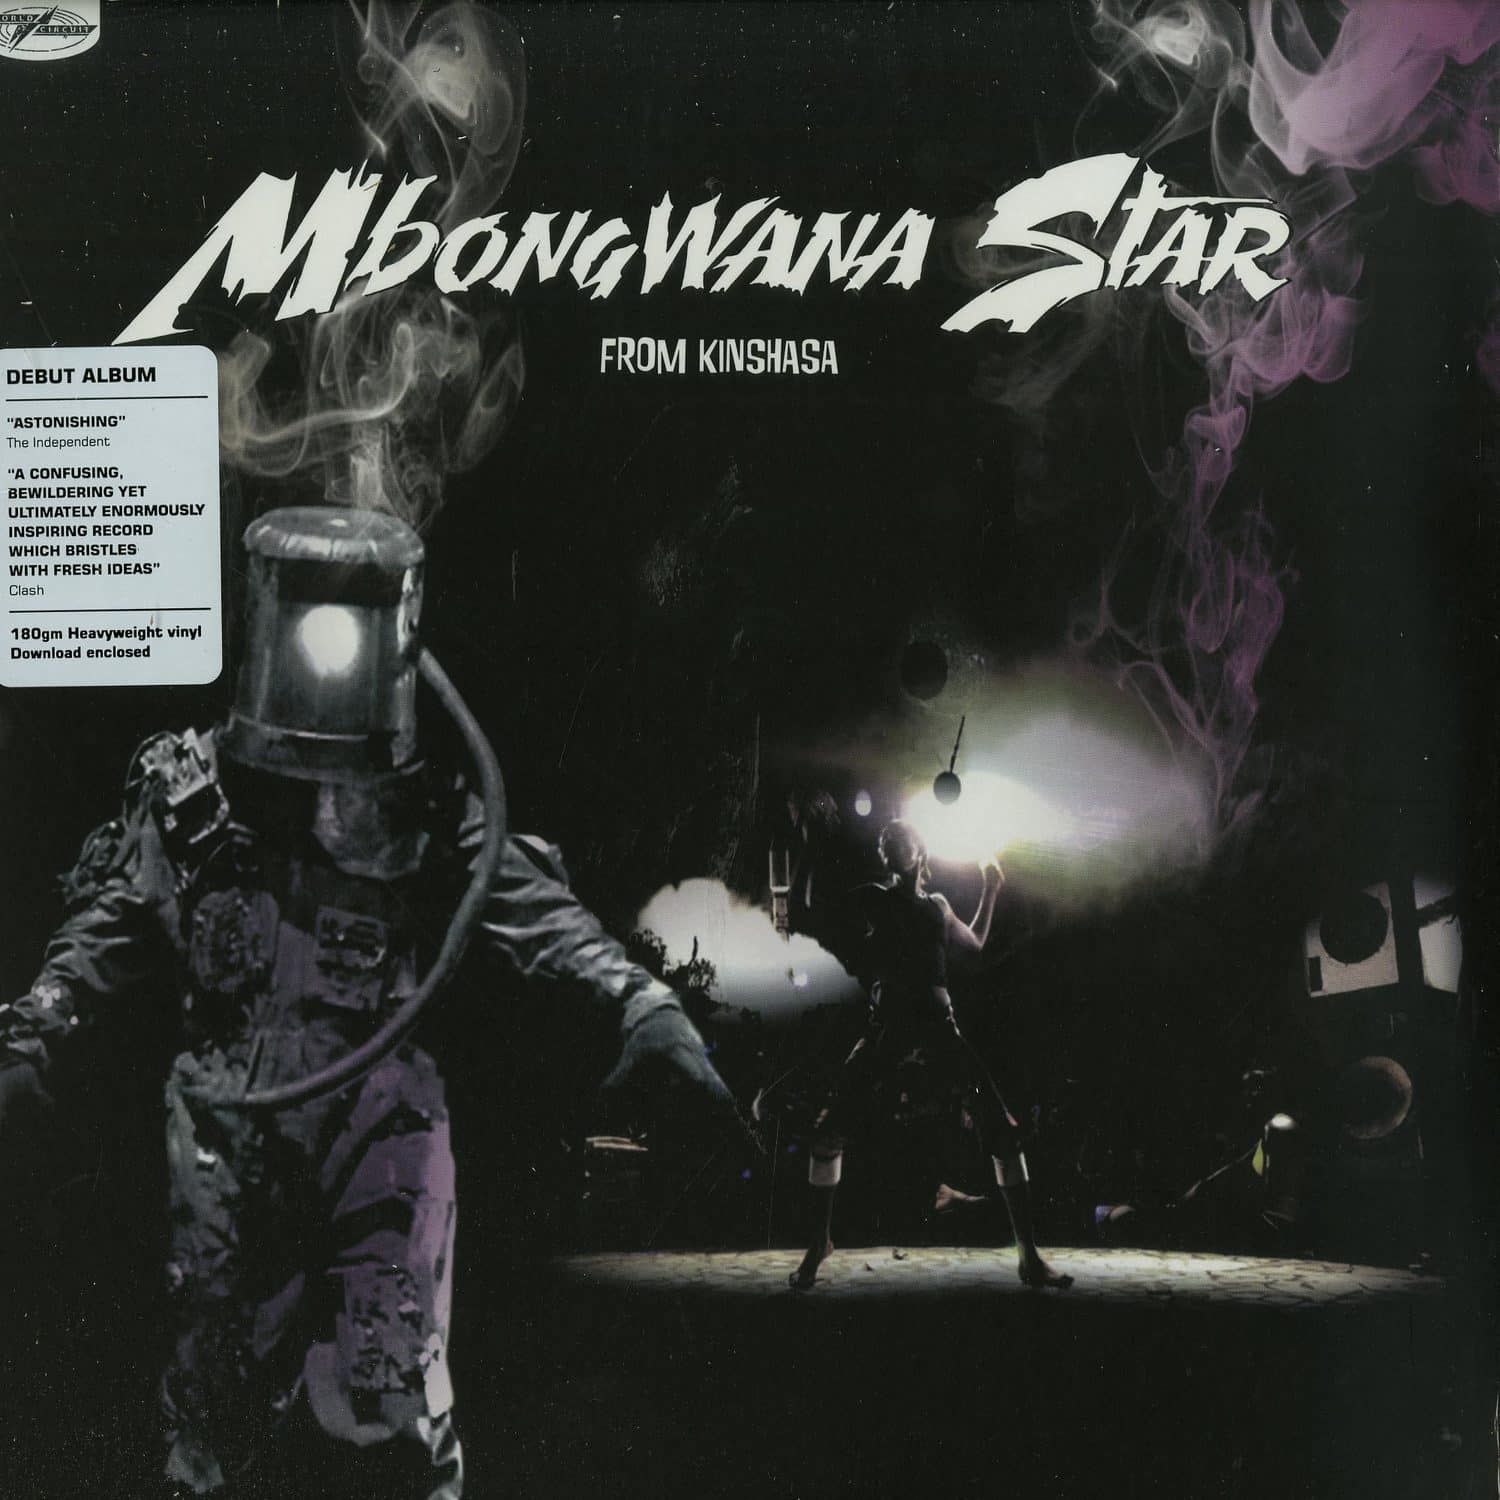 Mbongwana Star - FROM KINSHASA 